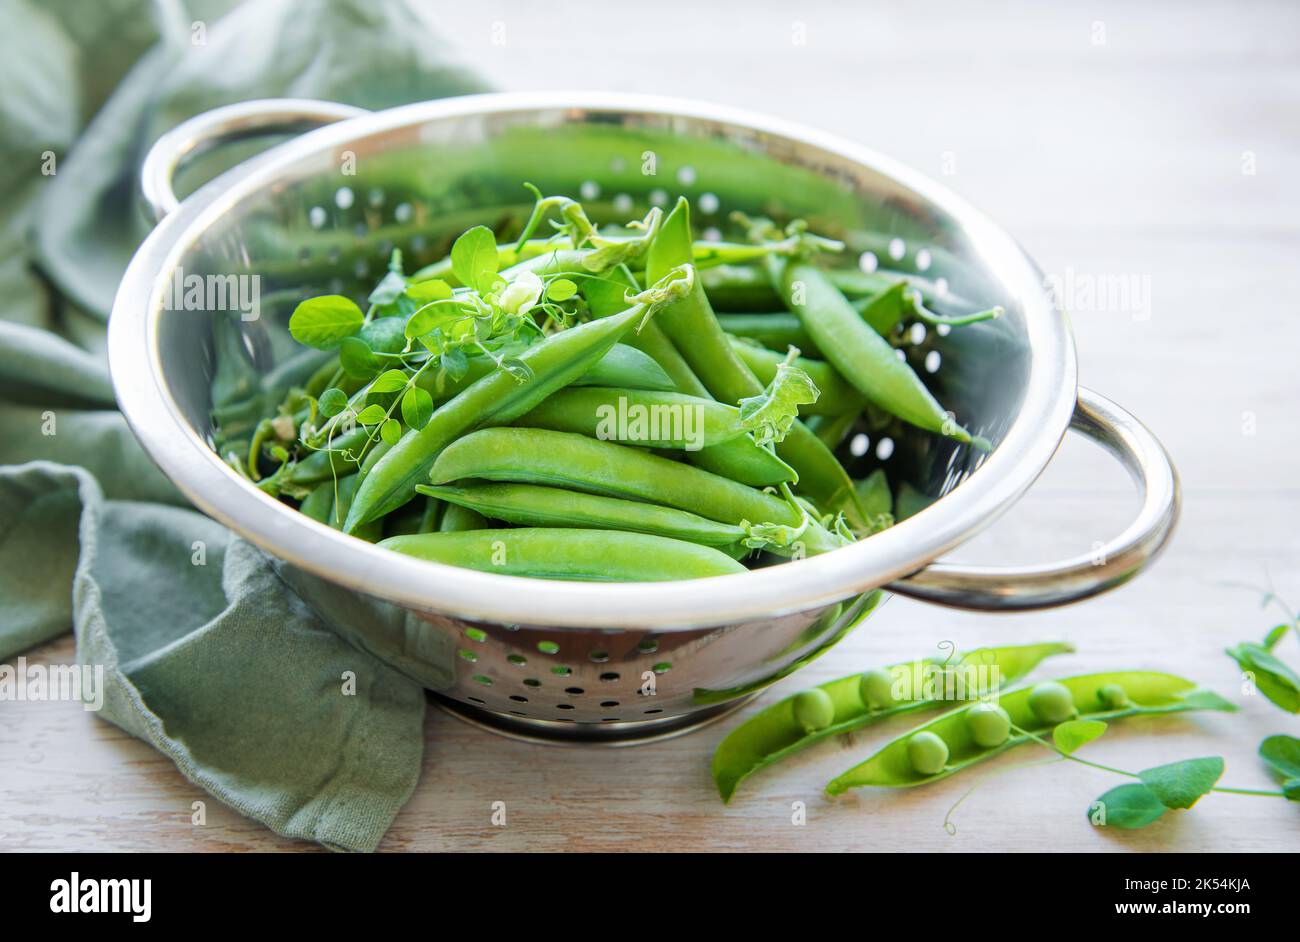 Junge frische, saftige Schoten aus grünen Erbsen. Gesunde Bio-Lebensmittel. Stockfoto